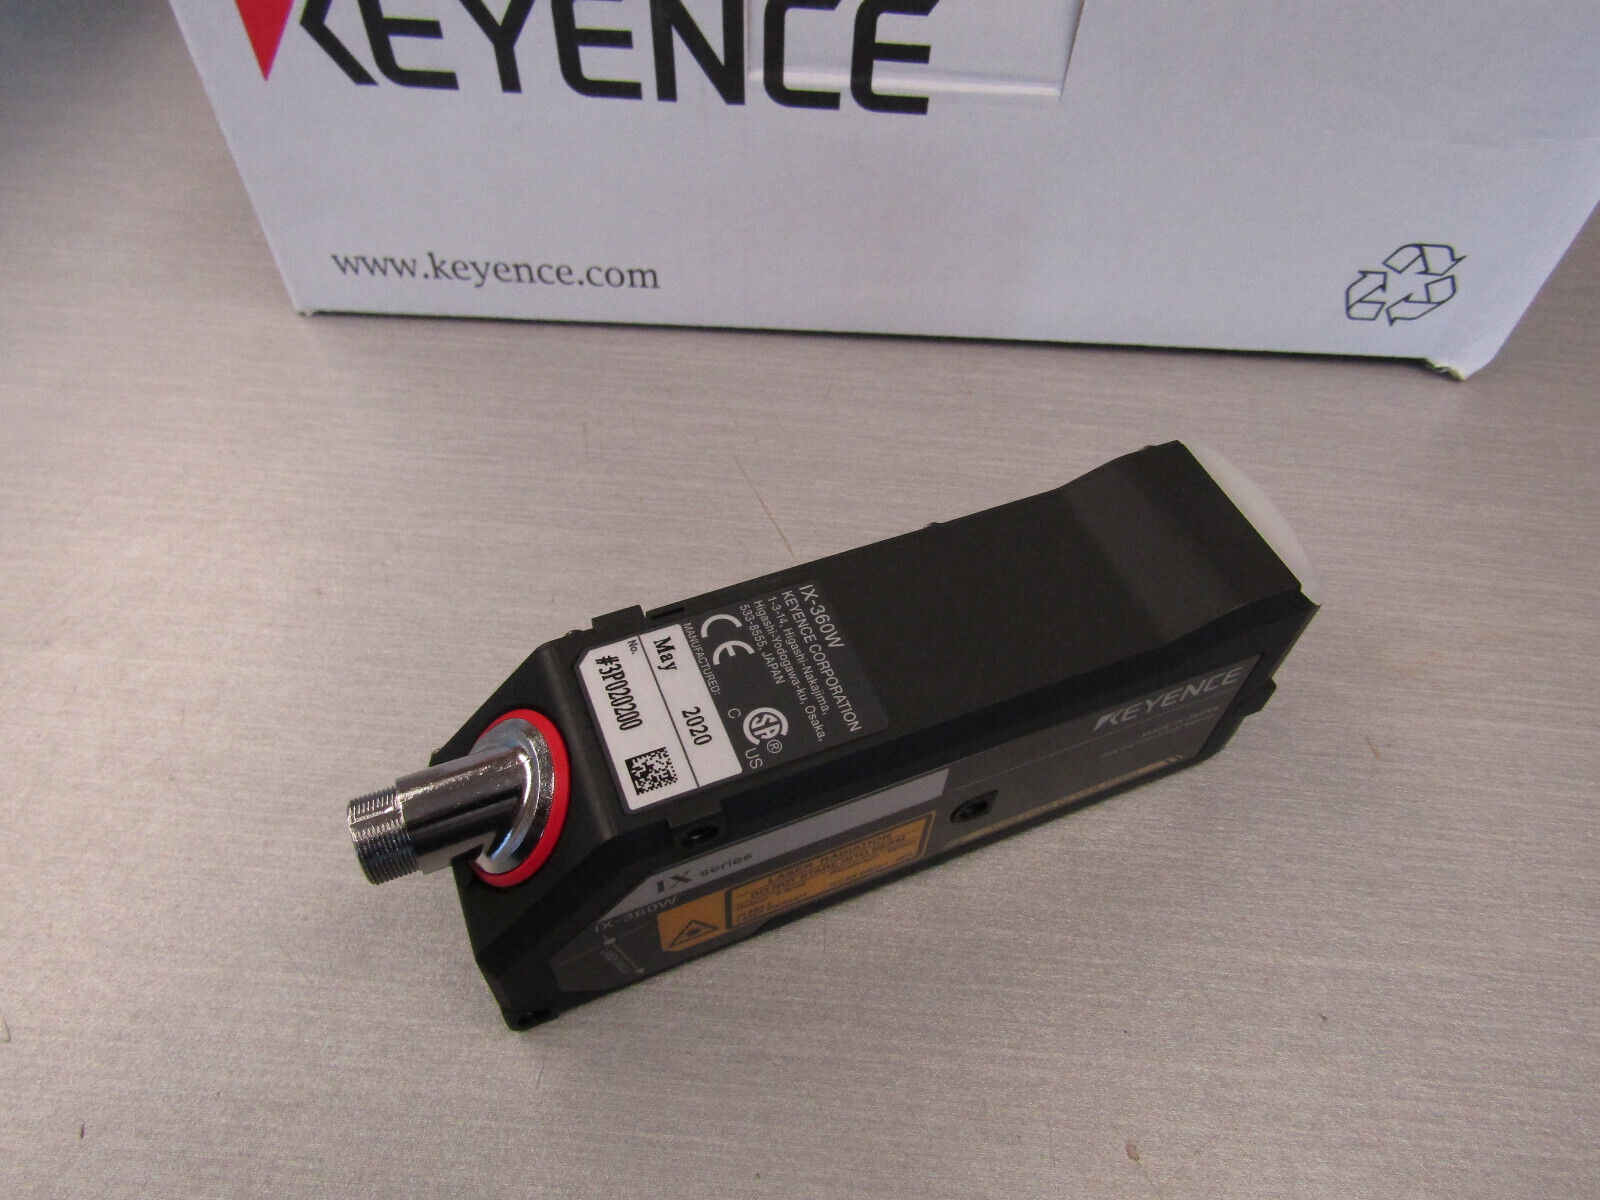 Keyence IX-360W Image Based Laser Sensor Head – Autovation Surplus